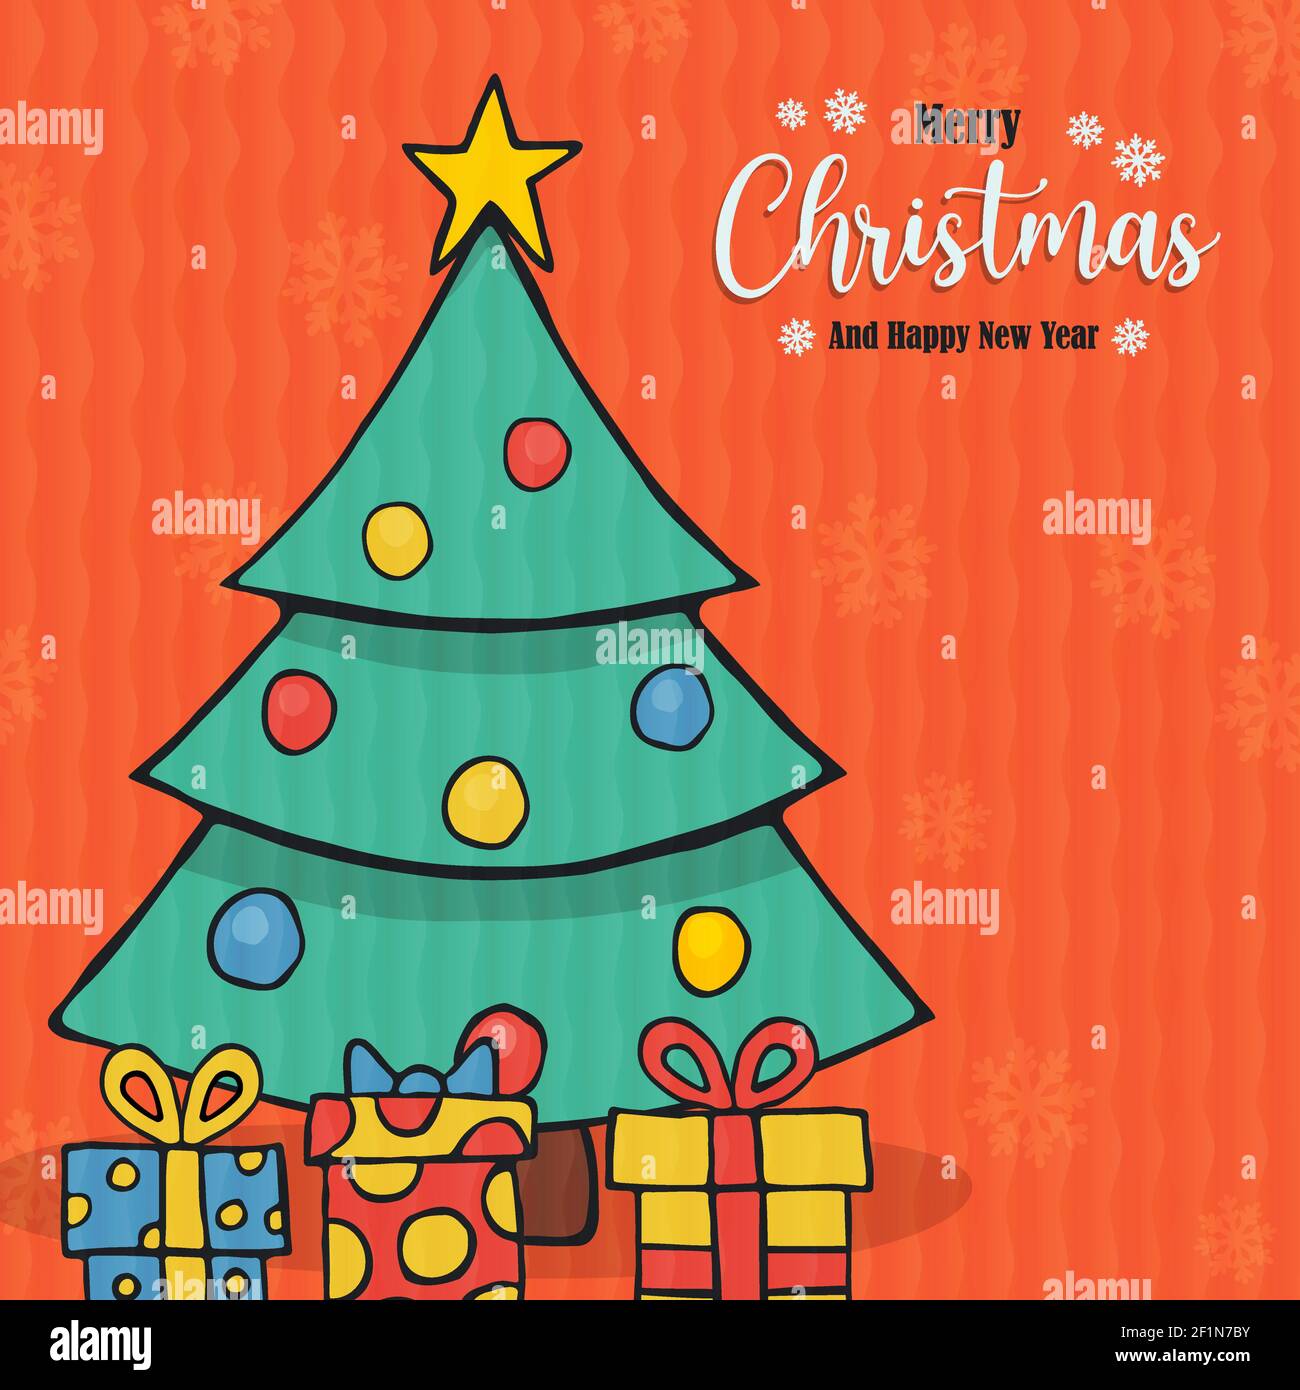 Frohe Weihnachten Grußkarte Illustration der festlichen Kiefer in handgezeichneten Stil. Weihnachten Geschenk Szene Cartoon für Jahreszeiten Grüße oder Party Einladung Stock Vektor